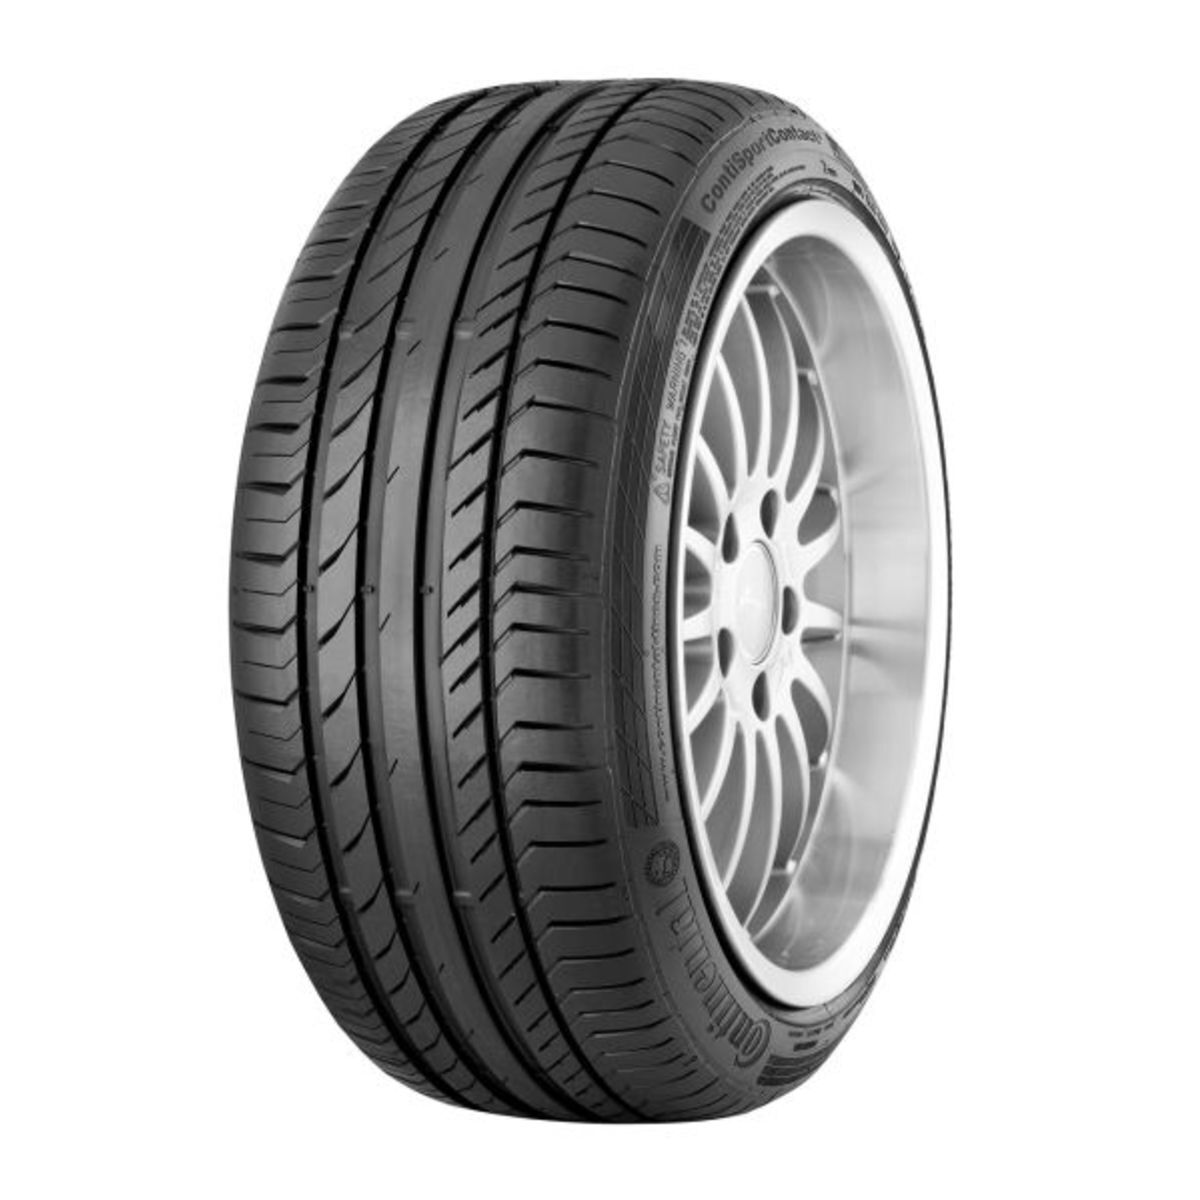 Neumáticos de verano CONTINENTAL ContiSportContact 5 255/35R18 XL 94Y